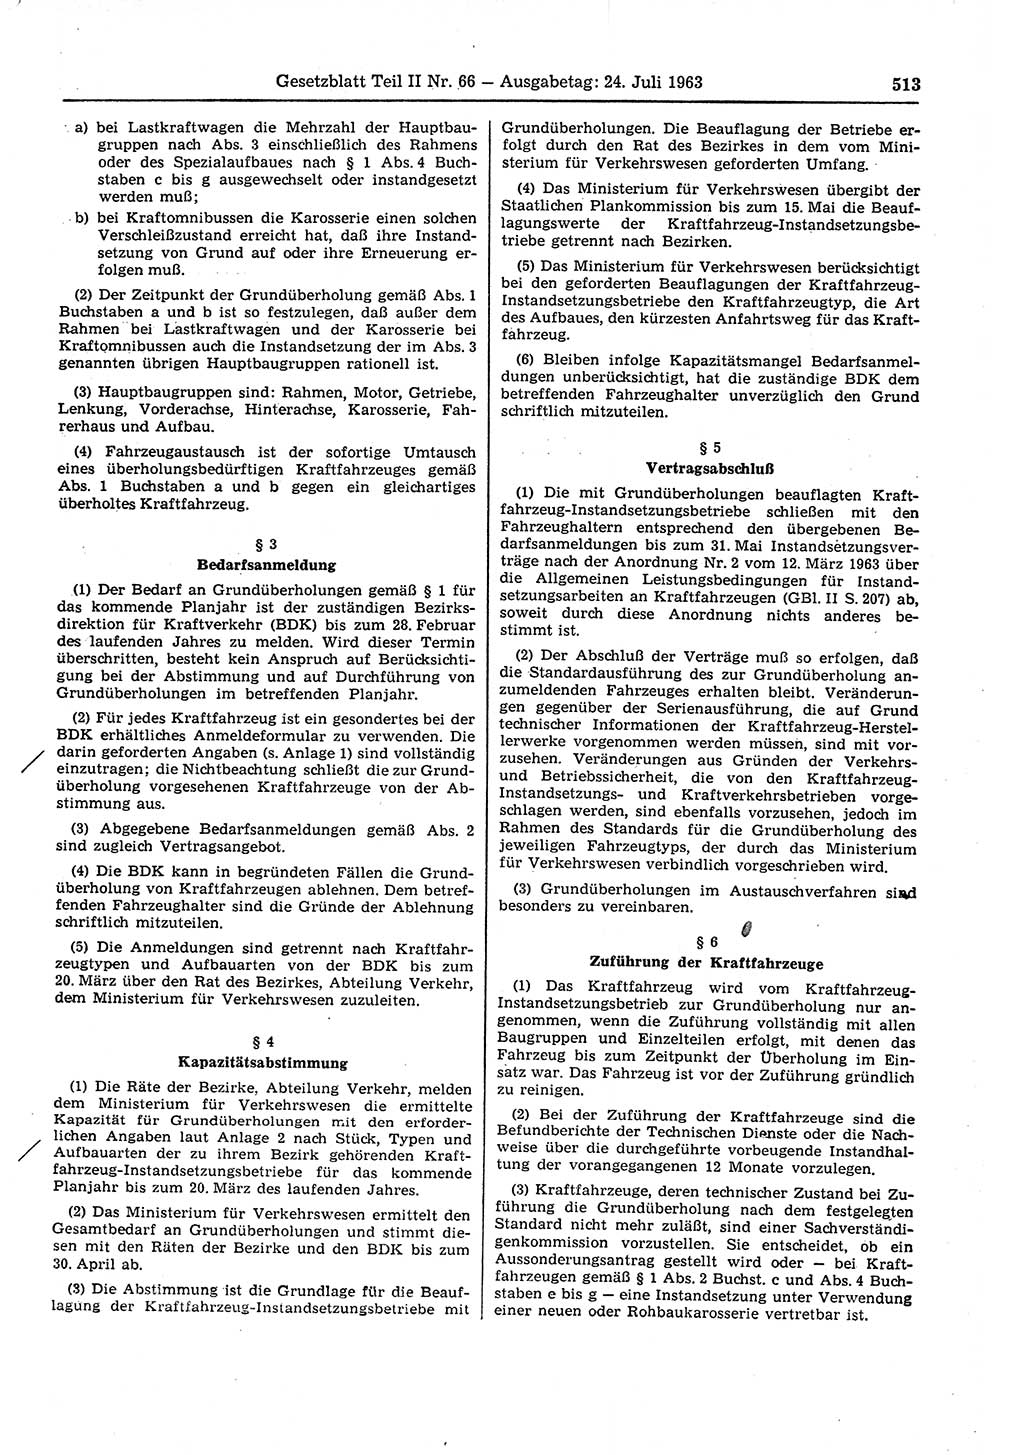 Gesetzblatt (GBl.) der Deutschen Demokratischen Republik (DDR) Teil ⅠⅠ 1963, Seite 513 (GBl. DDR ⅠⅠ 1963, S. 513)